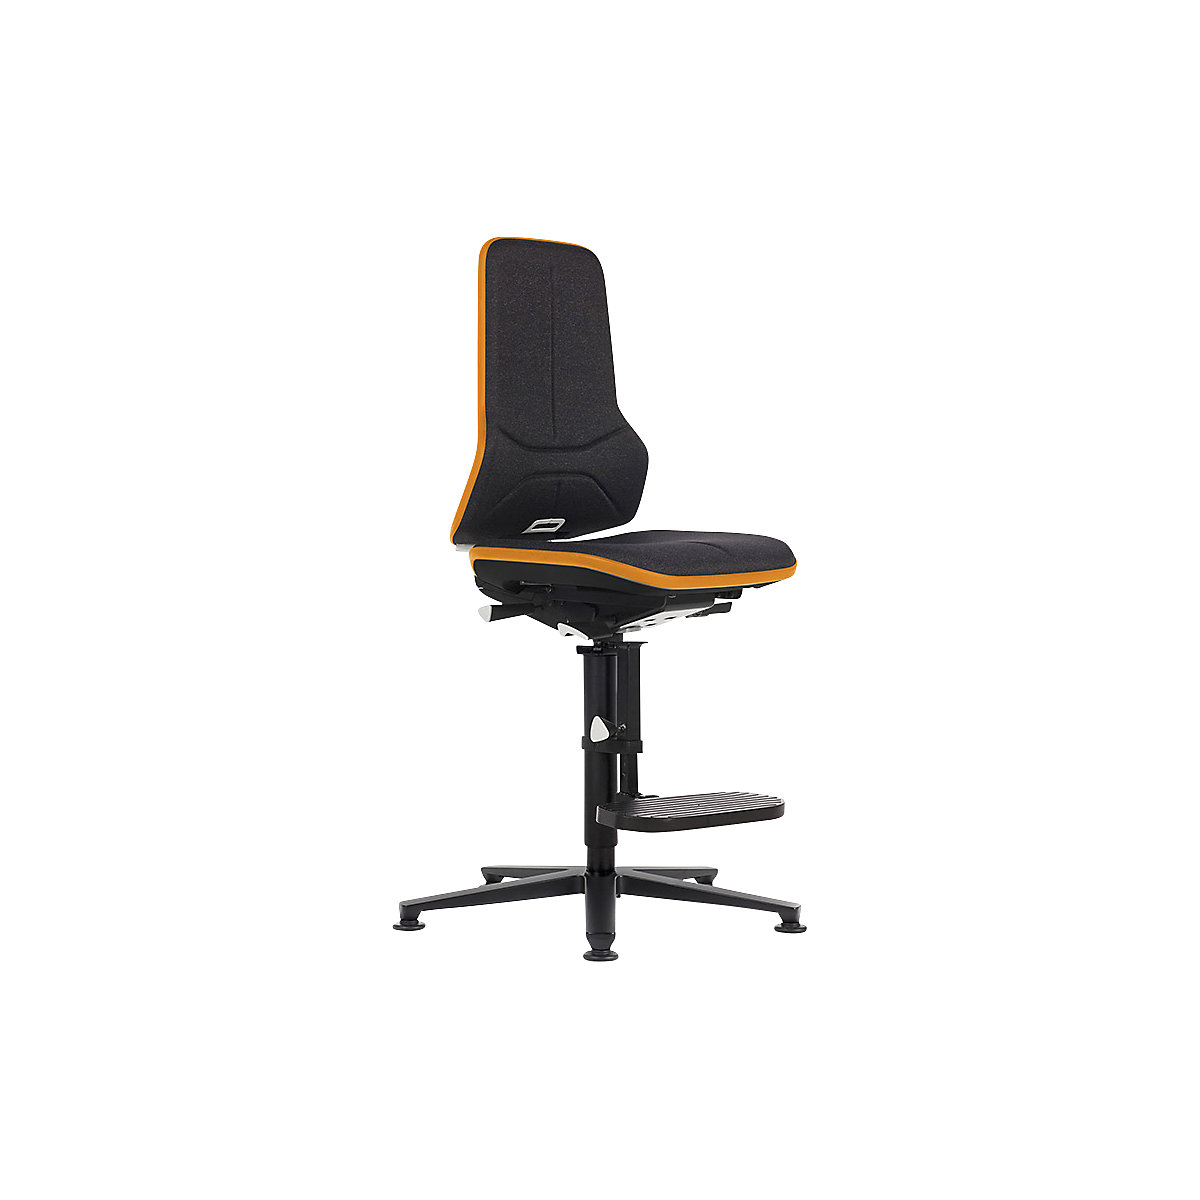 Průmyslová otočná židle NEON ESD, patky, stupínek pro nohy – bimos